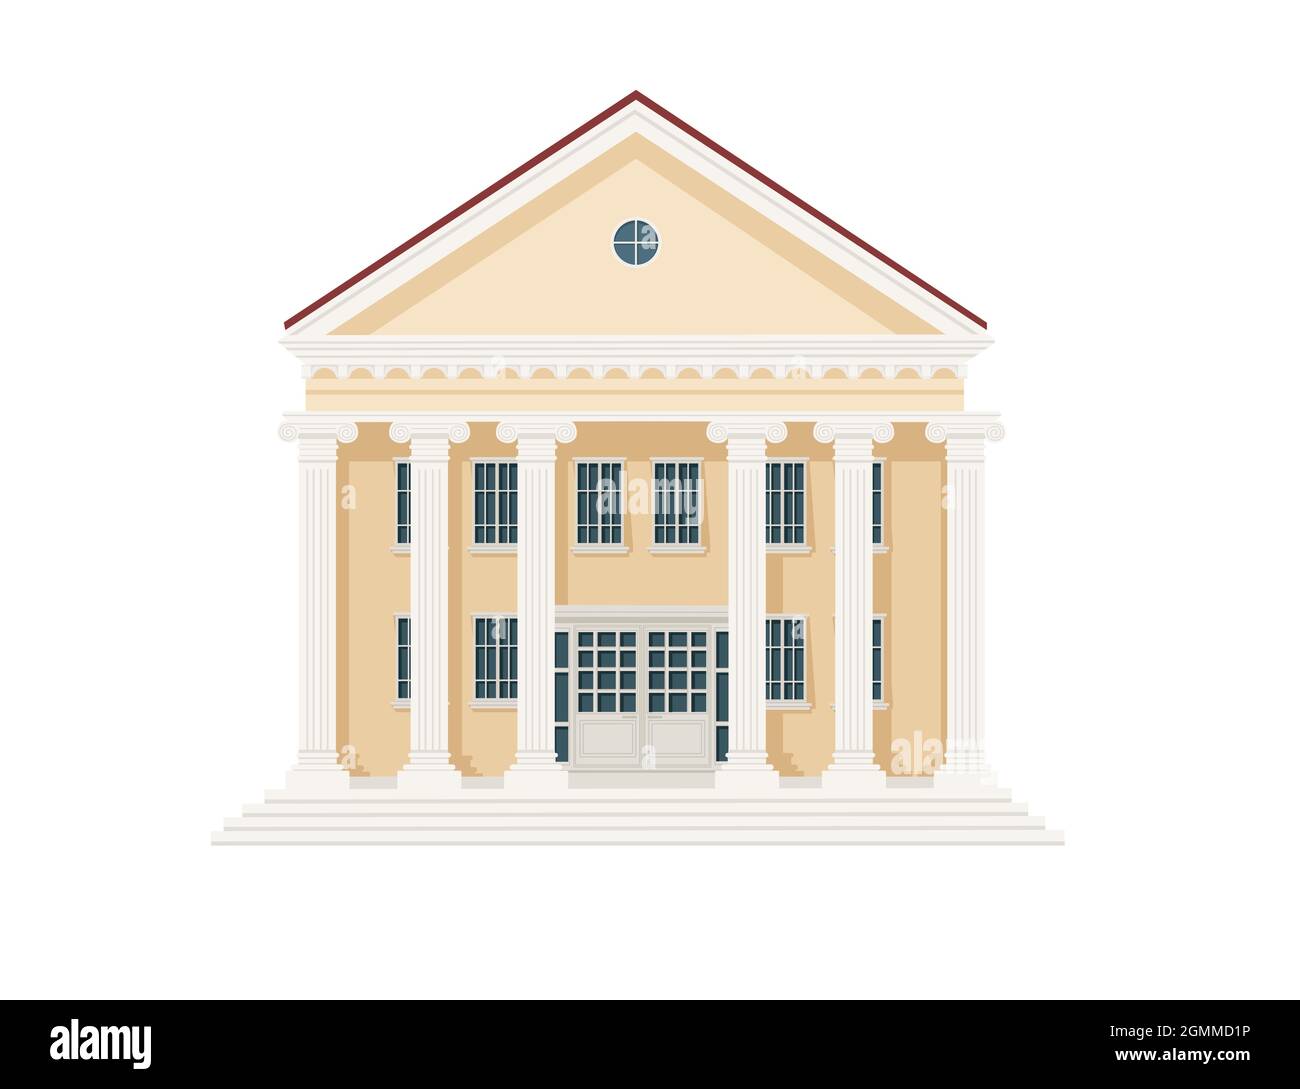 Beige couleur classique architecture américaine bâtiment gouvernemental avec piliers et escaliers illustration vectorielle sur fond blanc Illustration de Vecteur